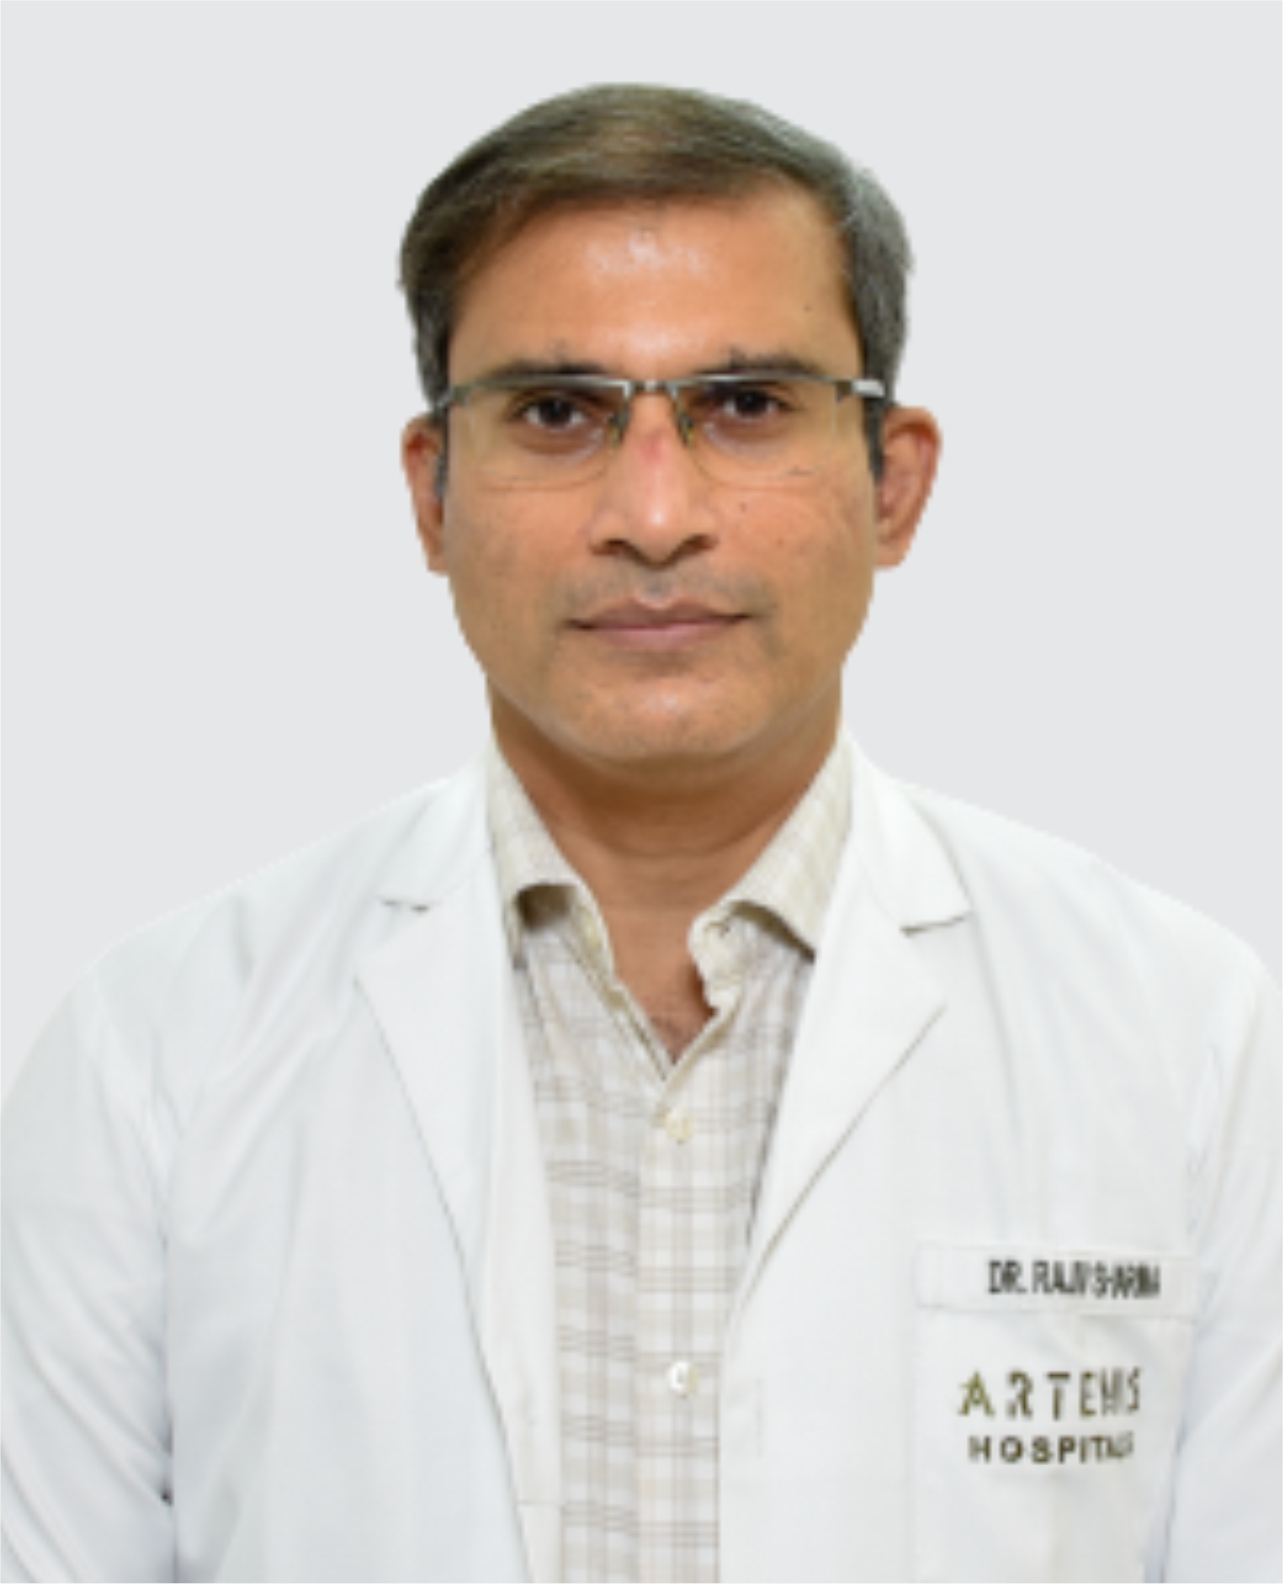 Dr. Rajiv Sharma